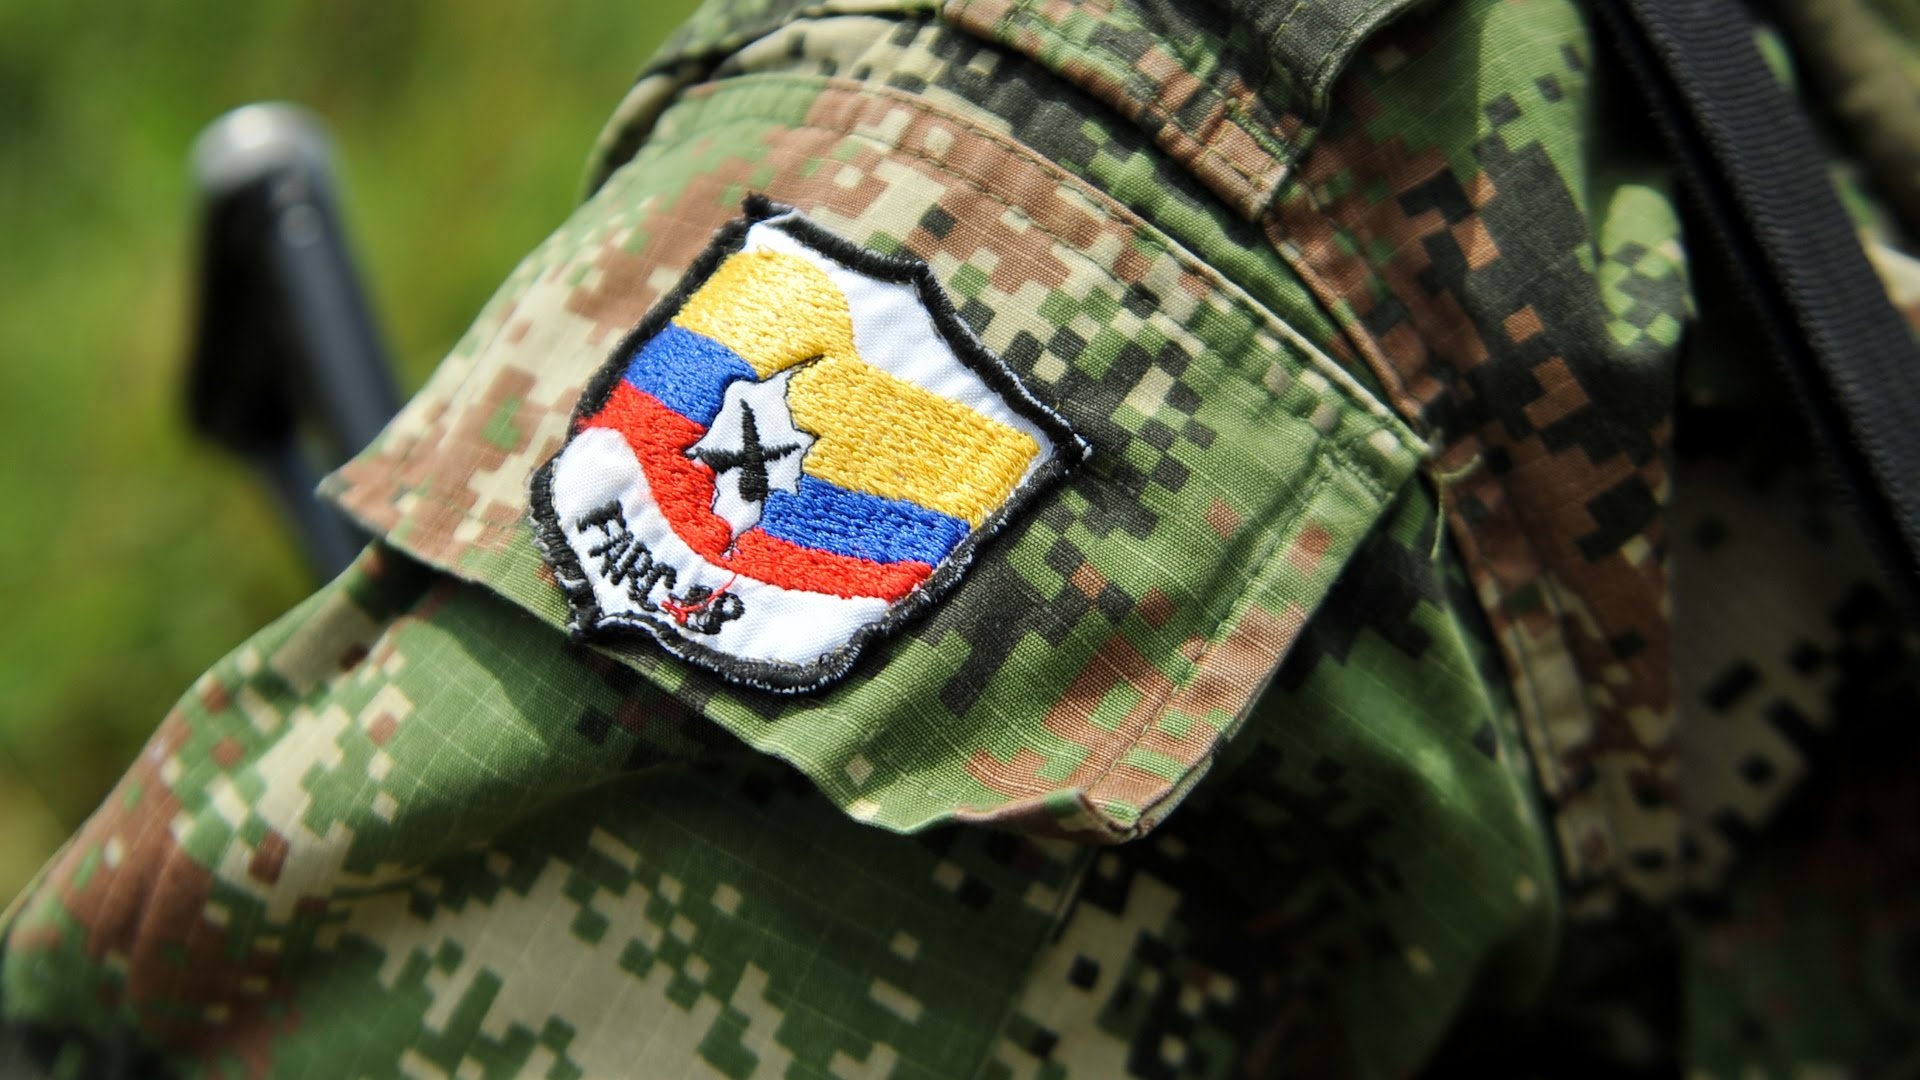 Las FARC han denunciado reiteradamente los maltratos, altos niveles de hacinamiento y la falta de atención médica que sufren sus miembros en las cárceles del país.